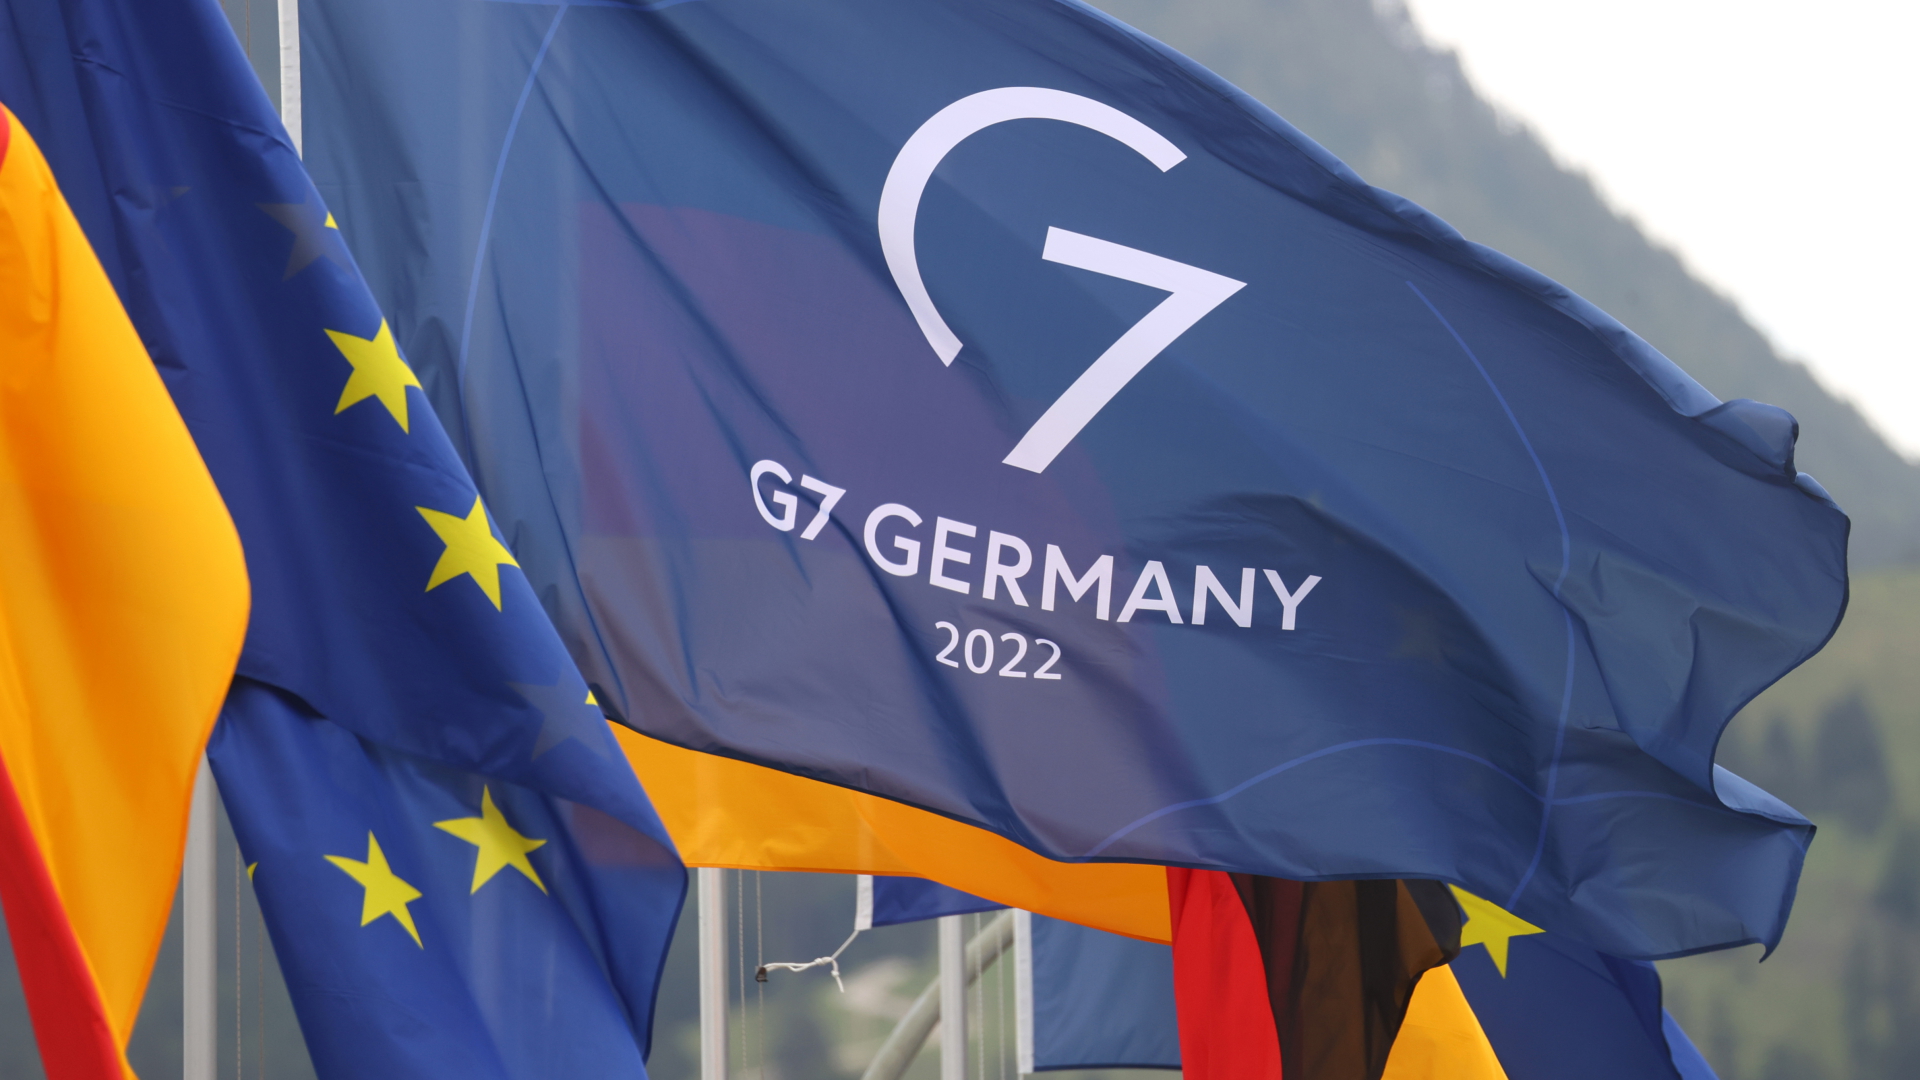 Teure G7-Gipfel: Hoher Aufwand, wenig Nutzen?